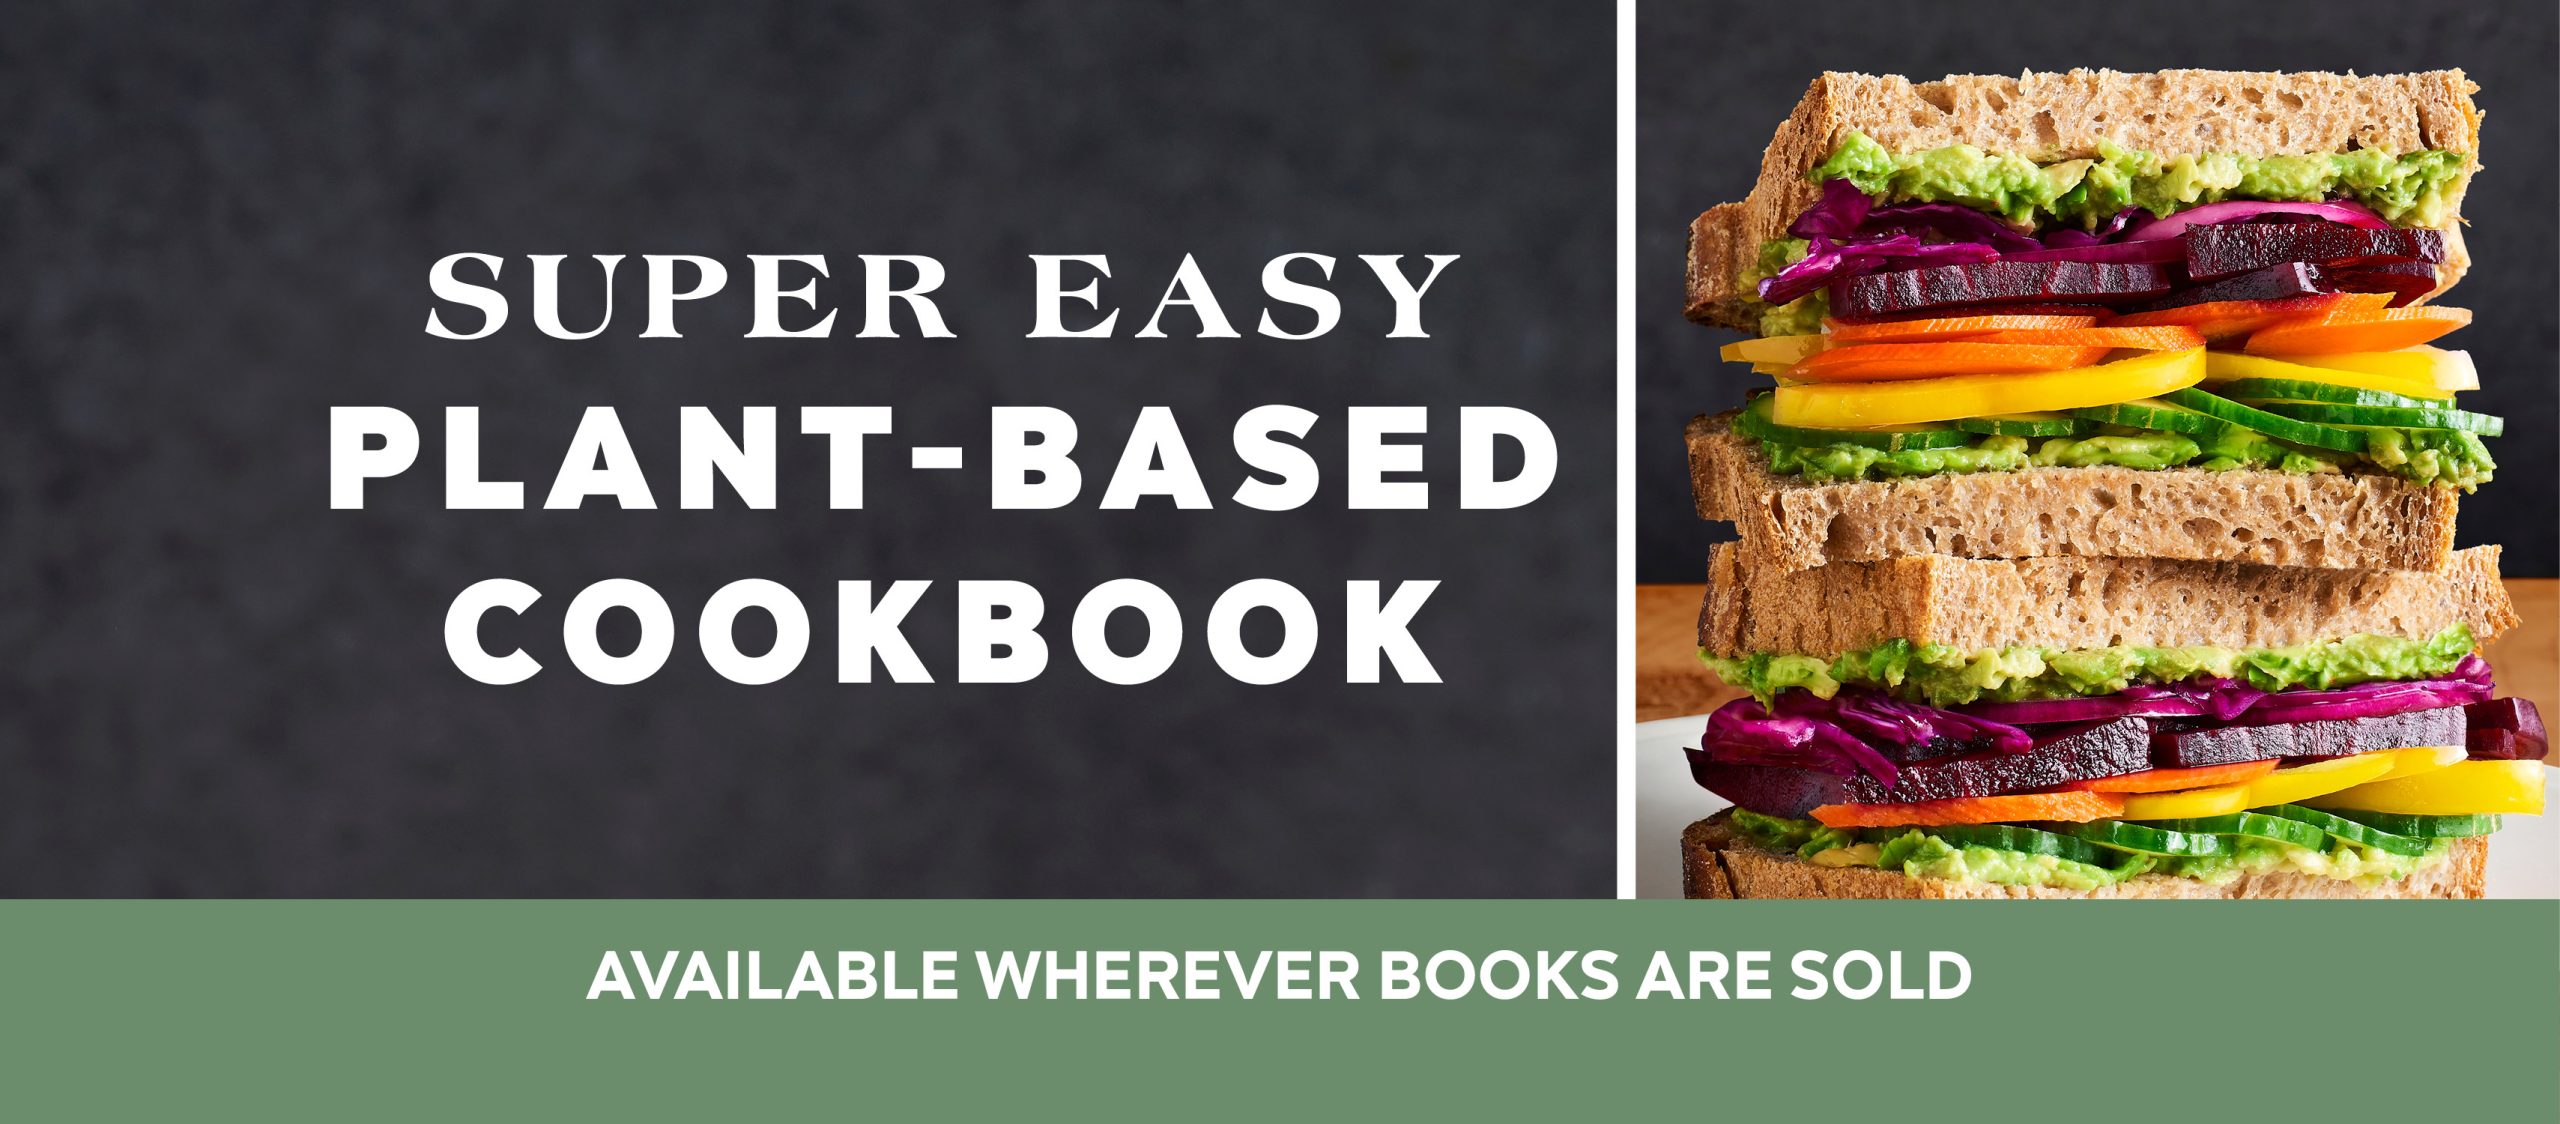 Super Easy Plant-Based Cookbook -